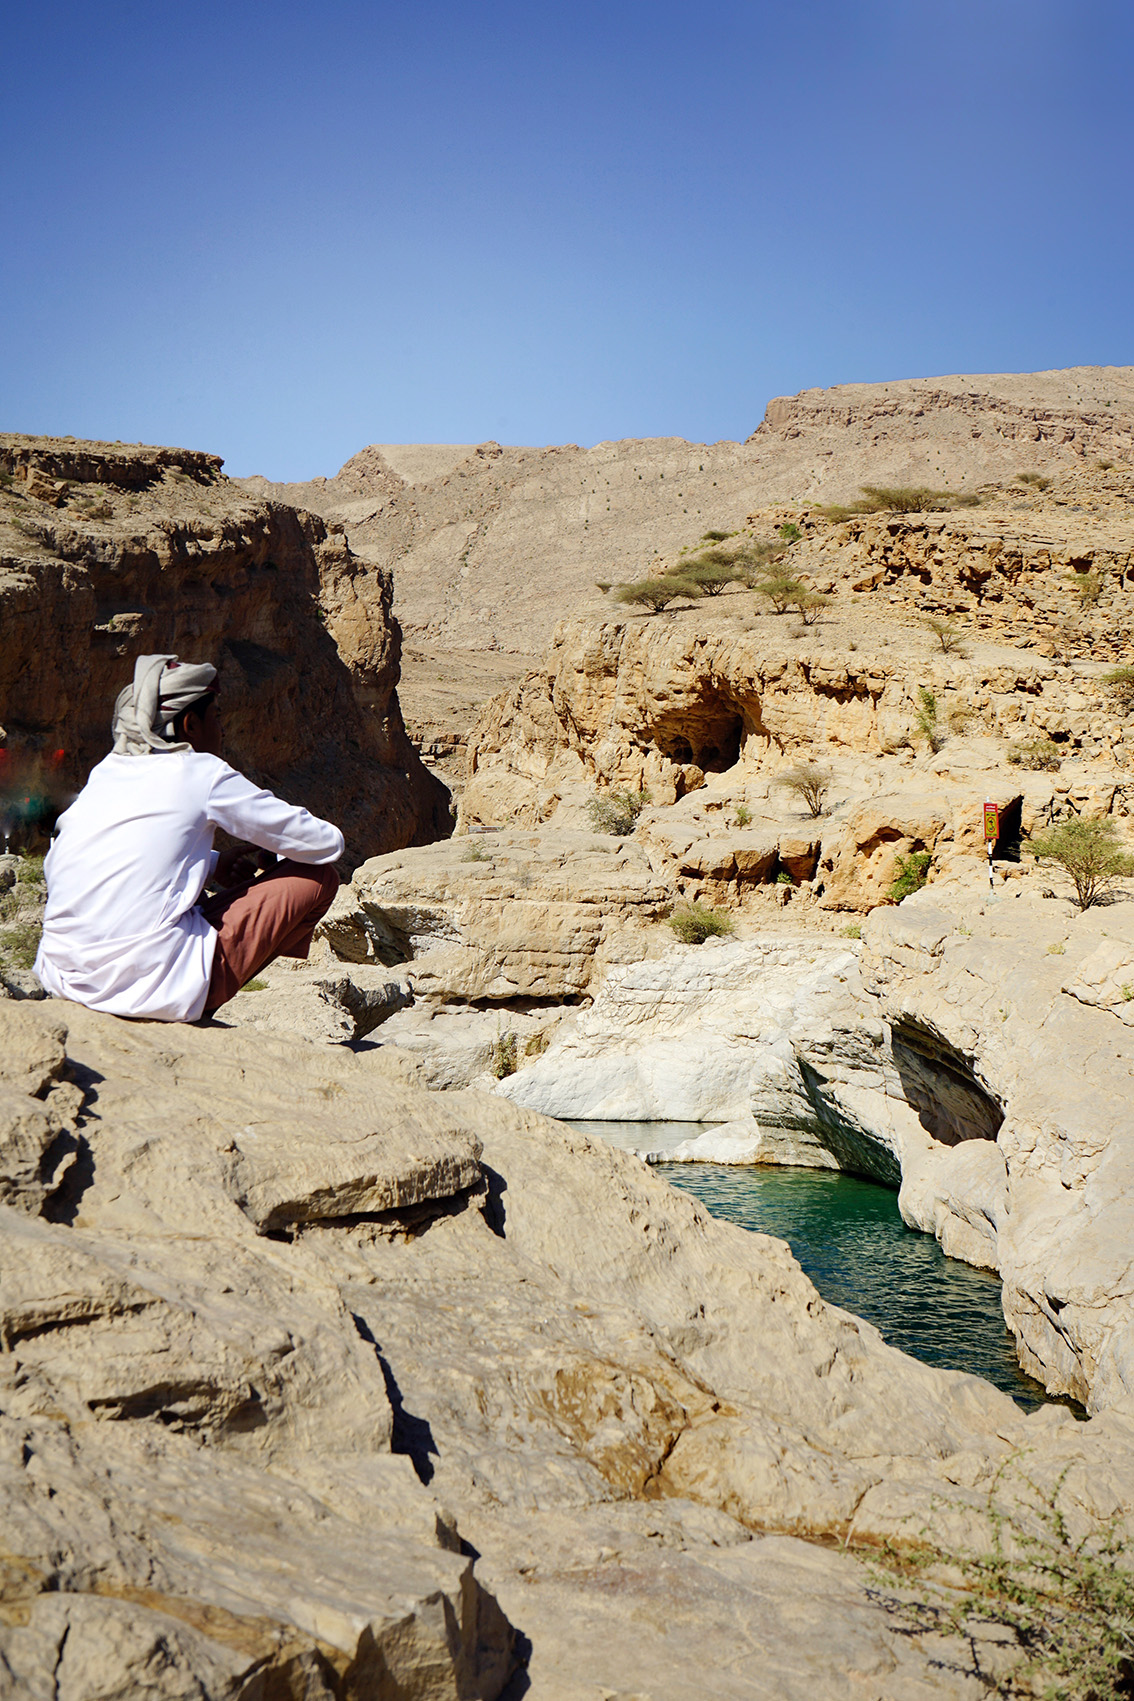 38 La mia avventura in Oman, i luoghi imperdibili da vedere.